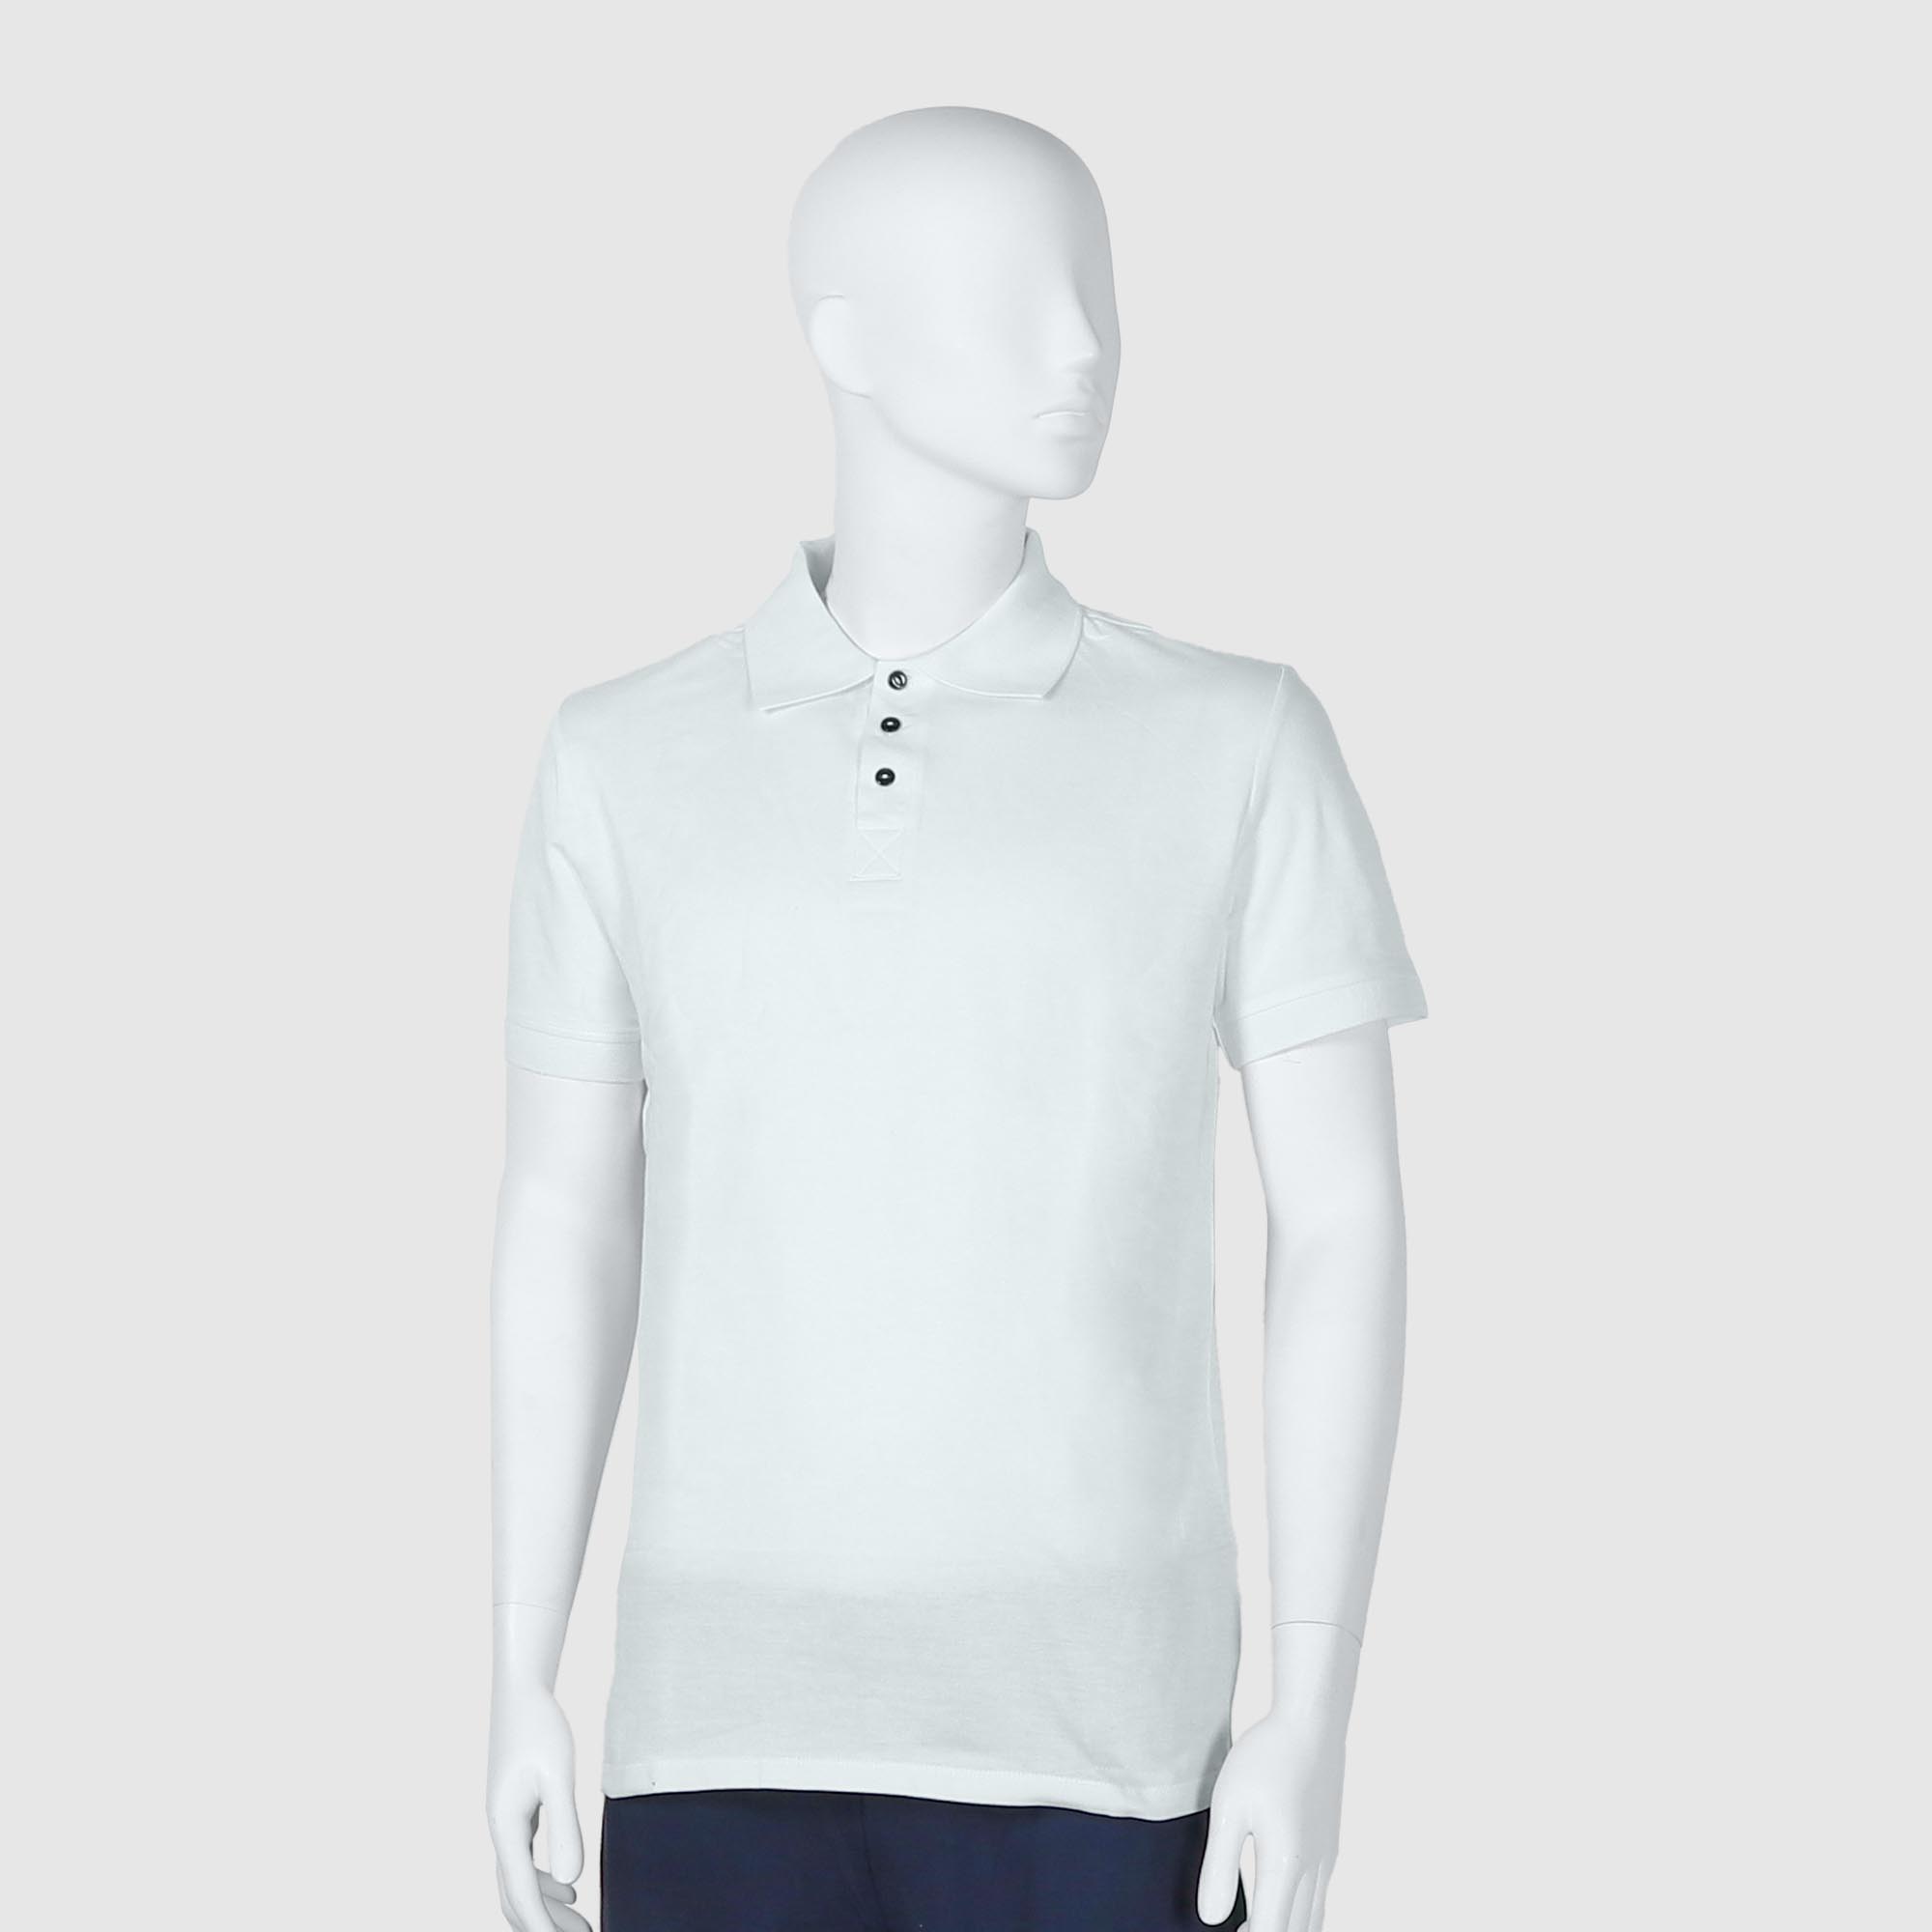 Мужская футболка-поло Diva Teks белая (DTD-07), цвет белый, размер 48-50 - фото 1